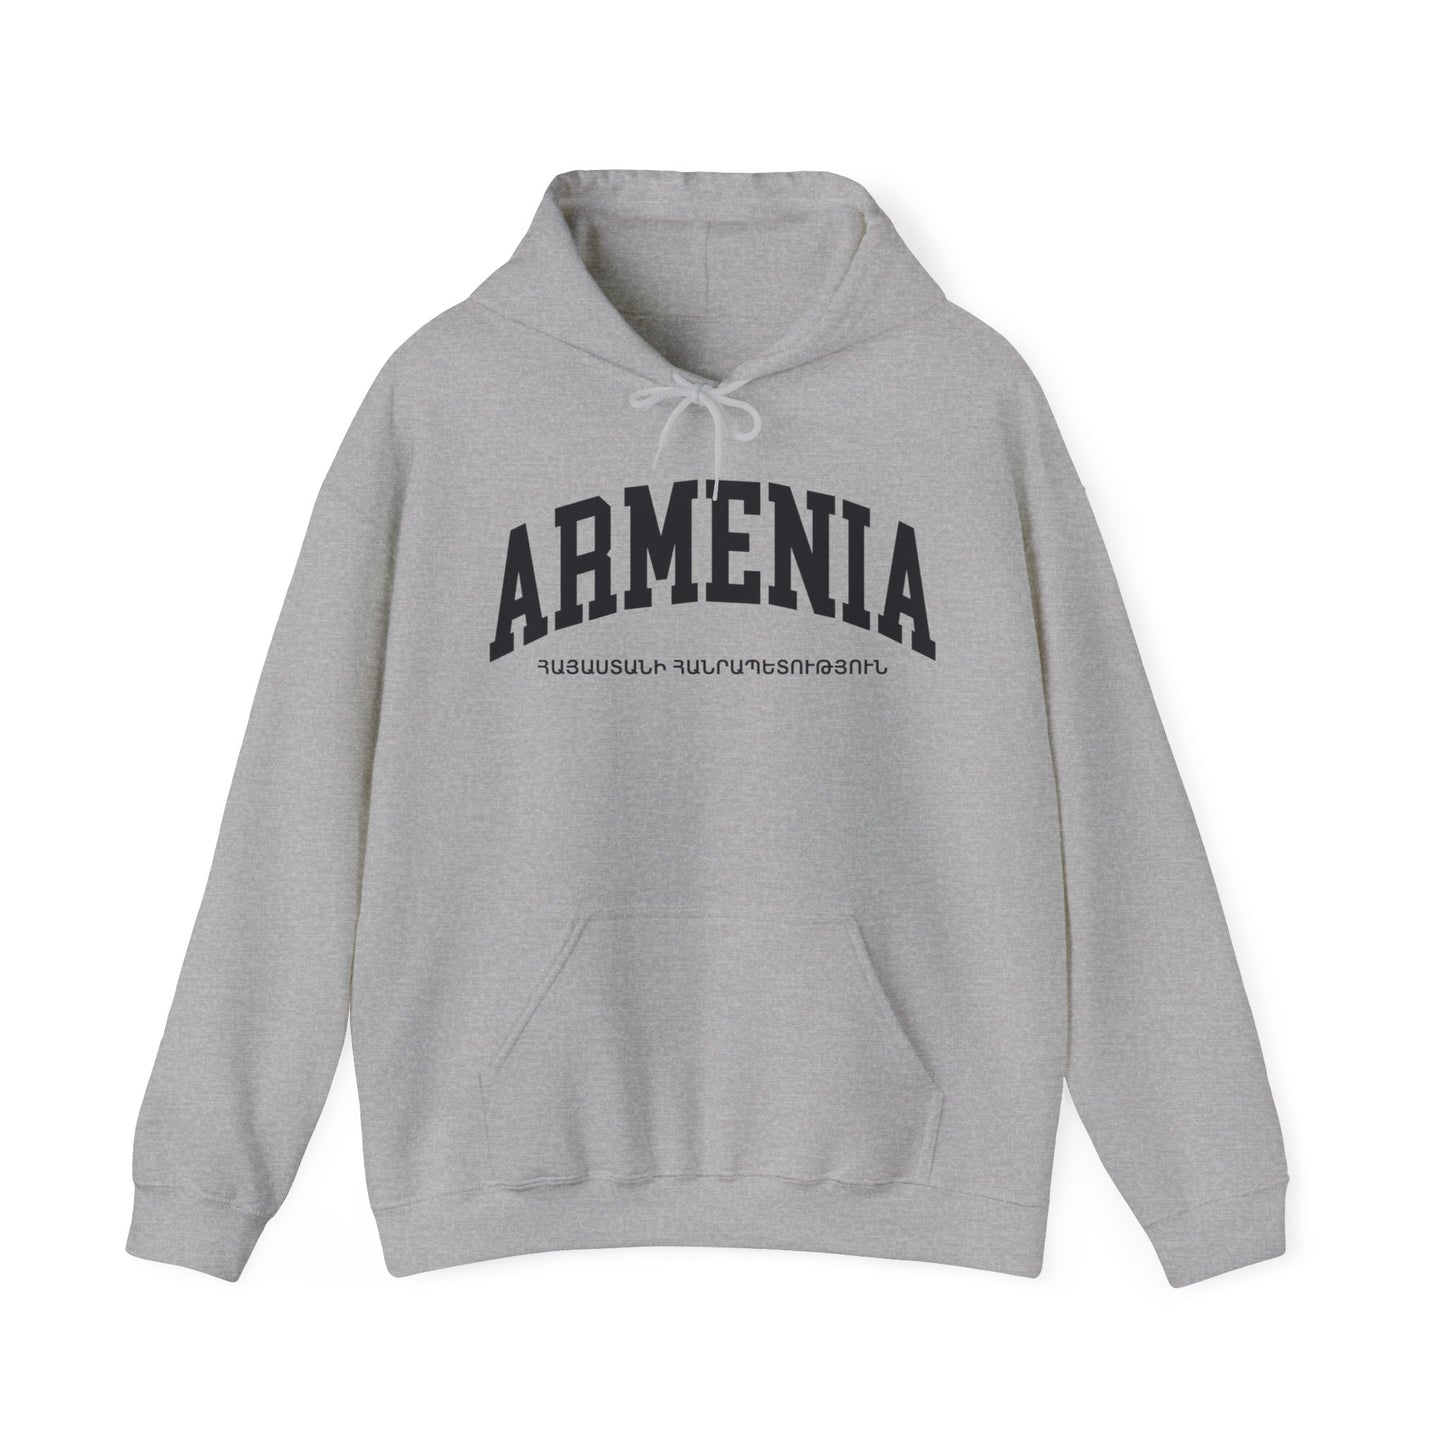 Armenia Hoodie